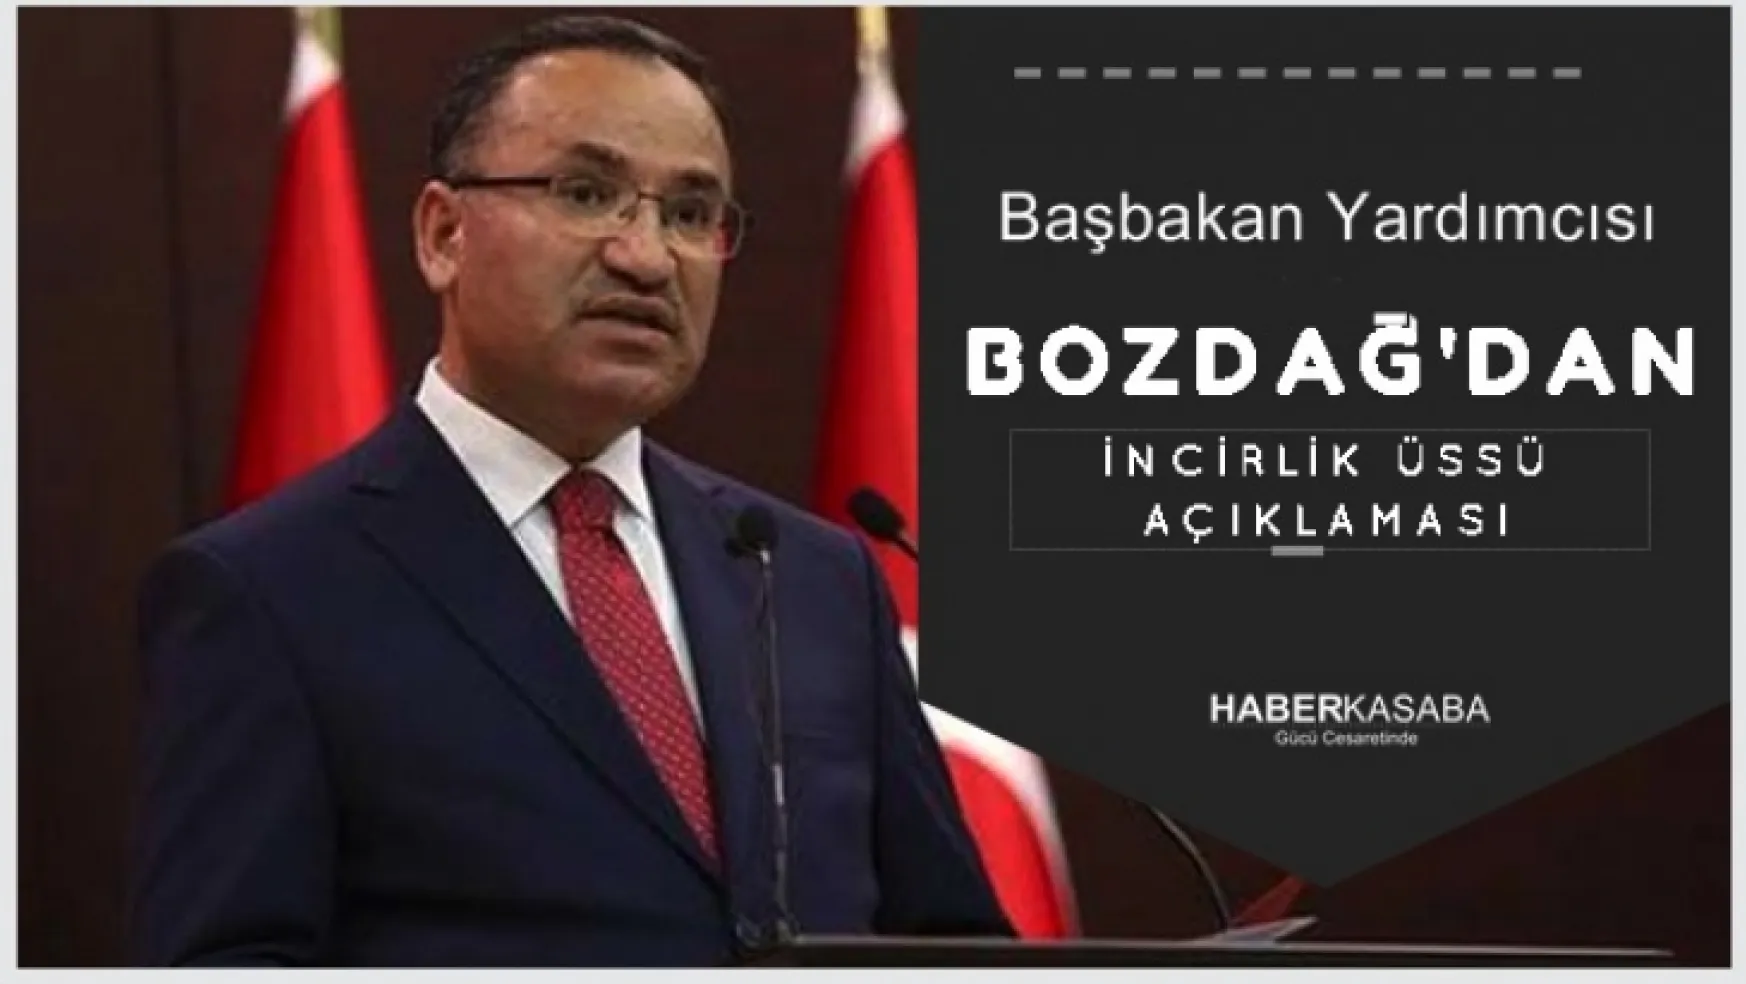 Başbakan Yardımcısı Bozdağ'dan İncirlik Üssü açıklaması